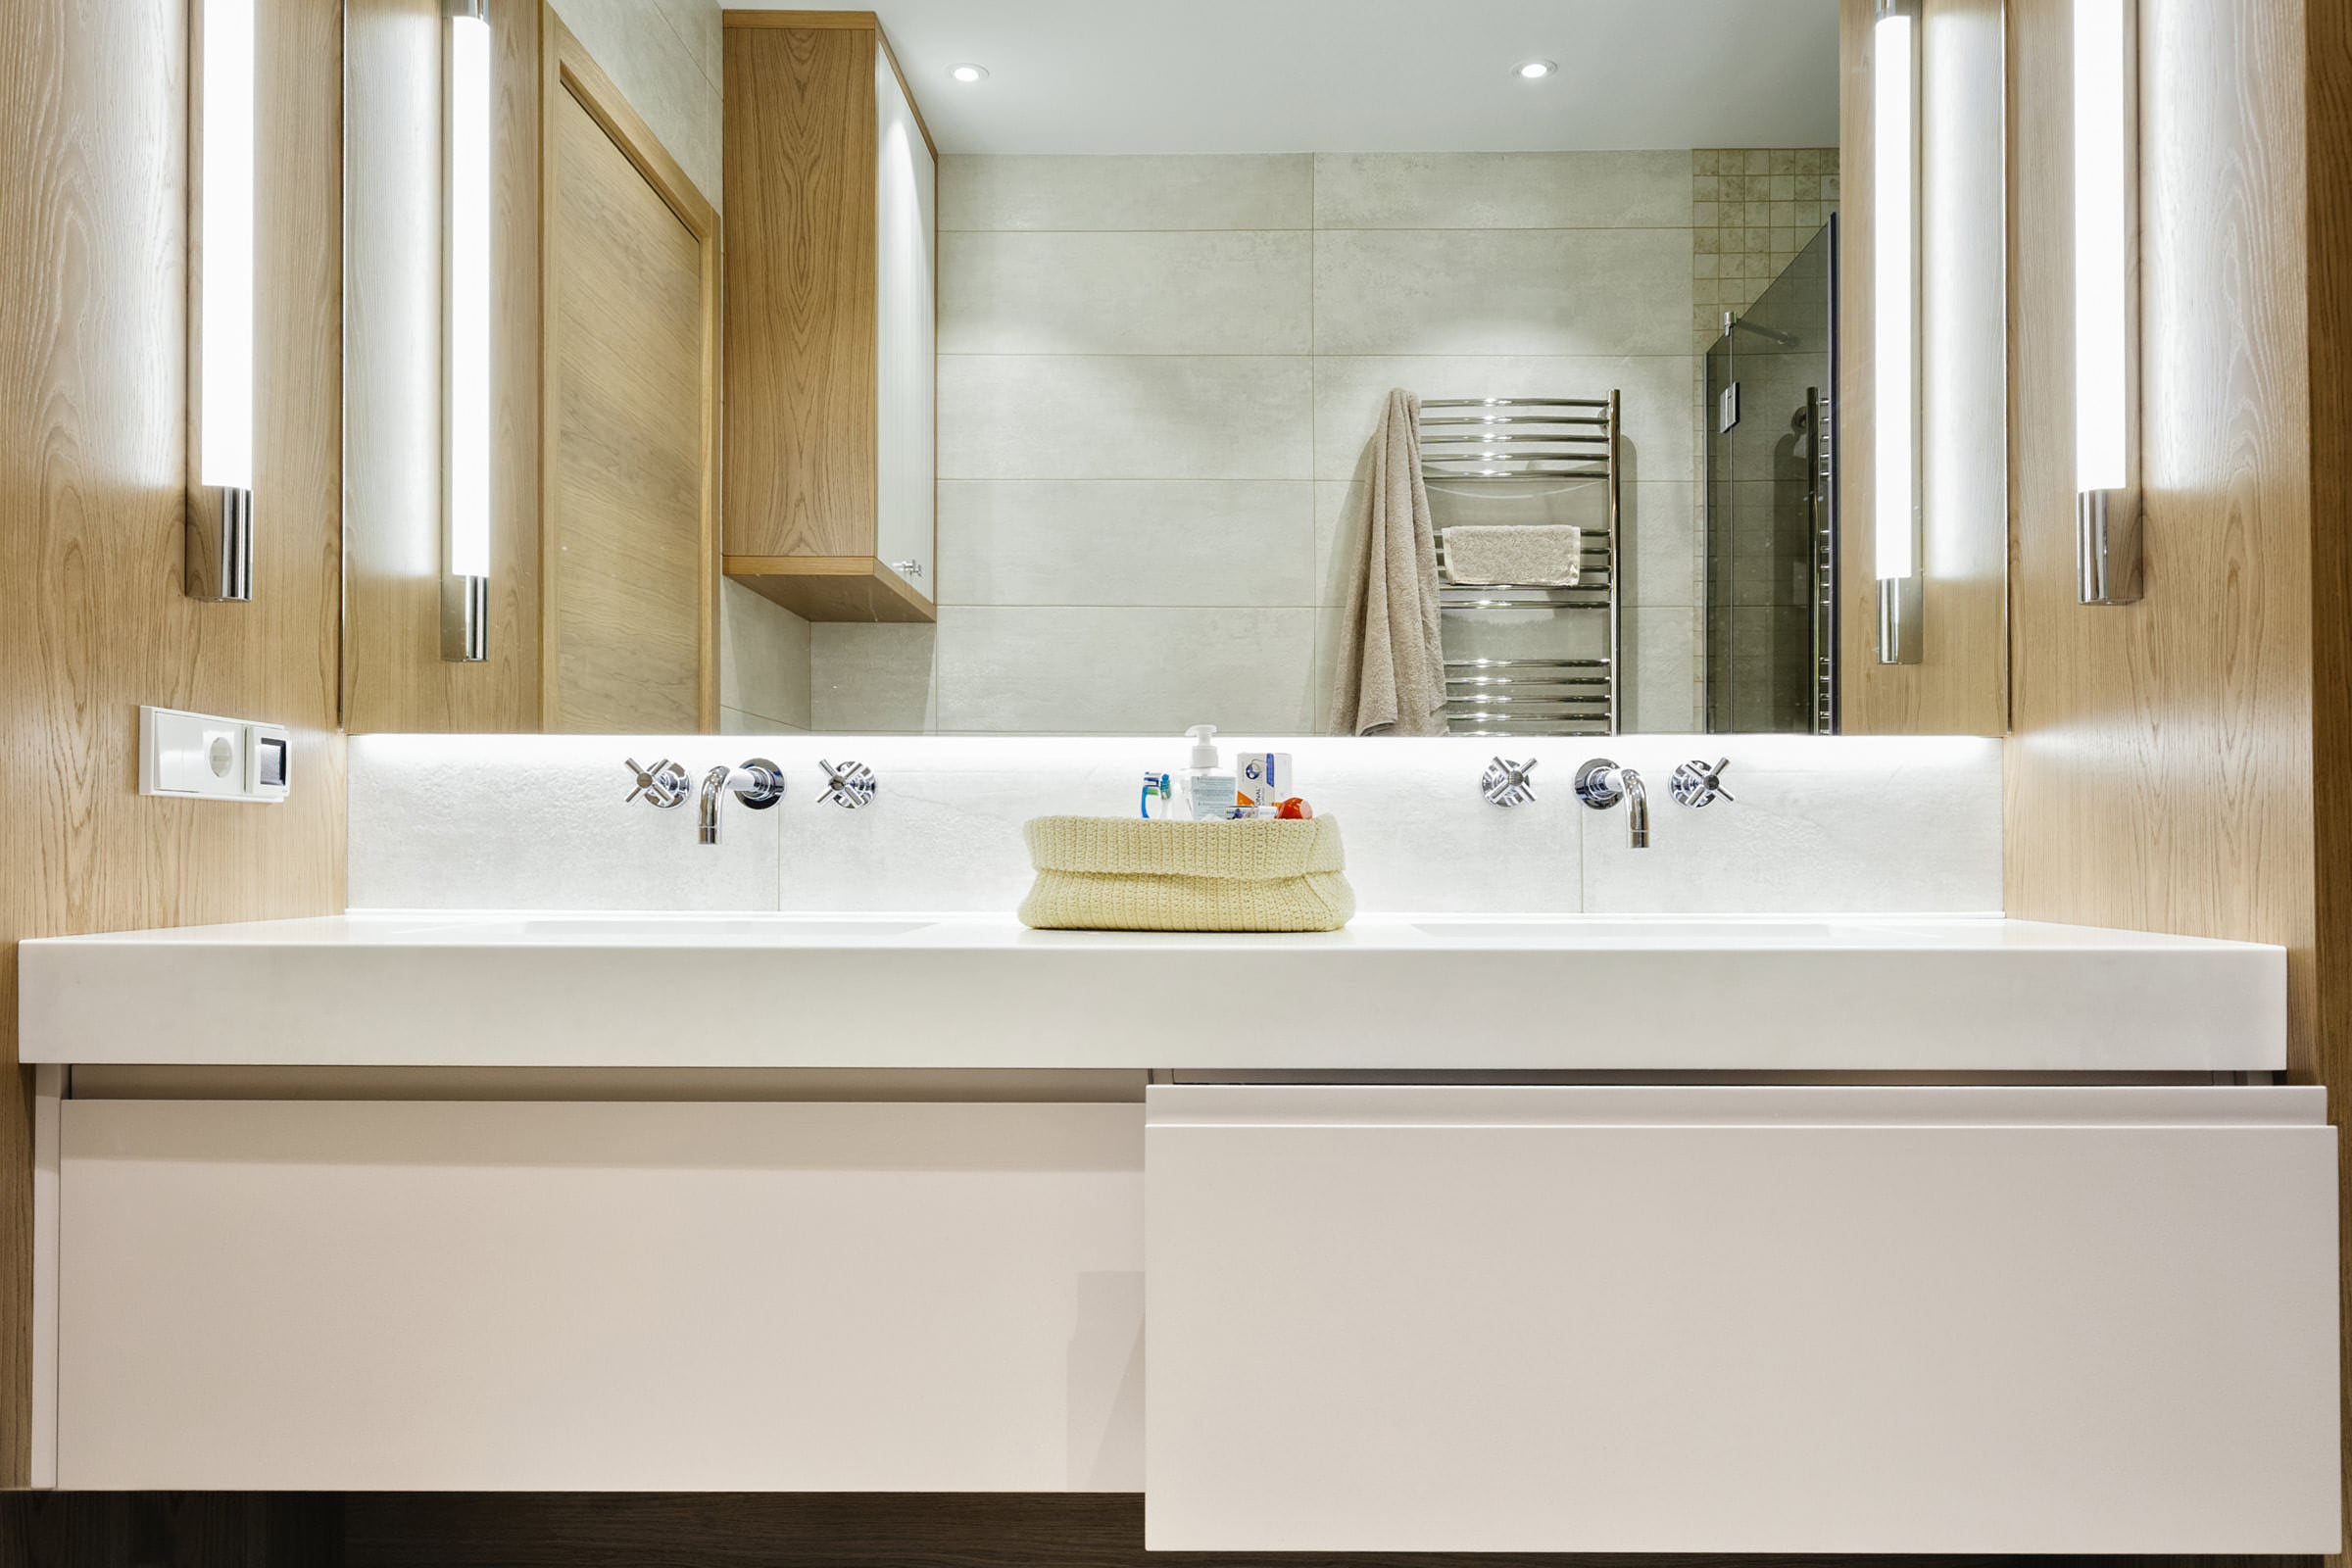 Интерьерное фото ванной комнаты с умывальником, большим зеркалом с подсветкой и душевой кабиной для портфолио изготовителя деревянной мебели